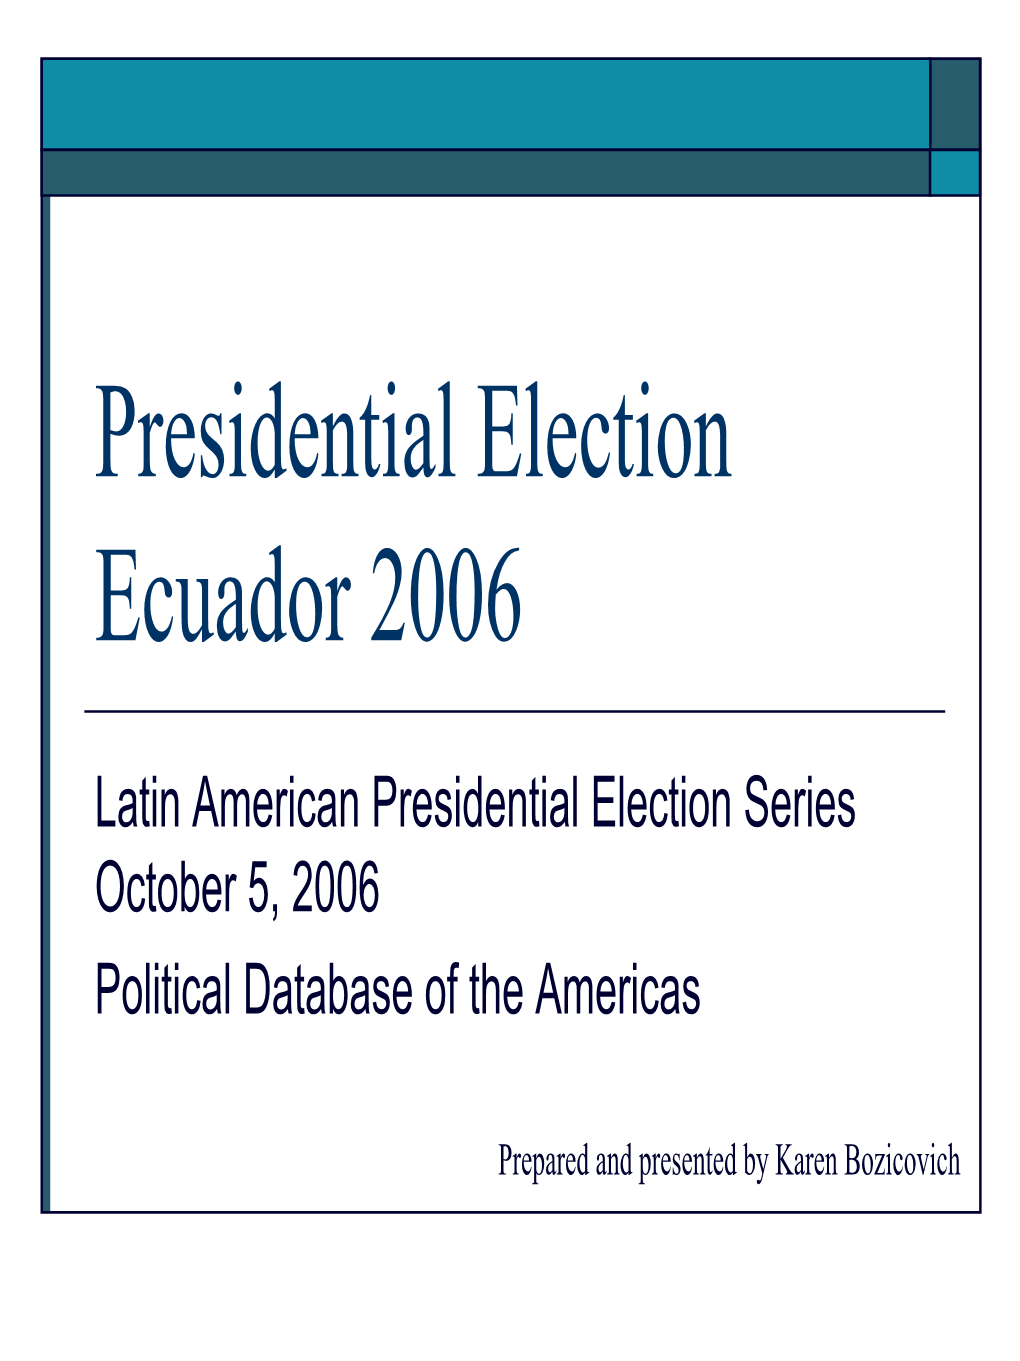 Presidential Election Ecuador 2006